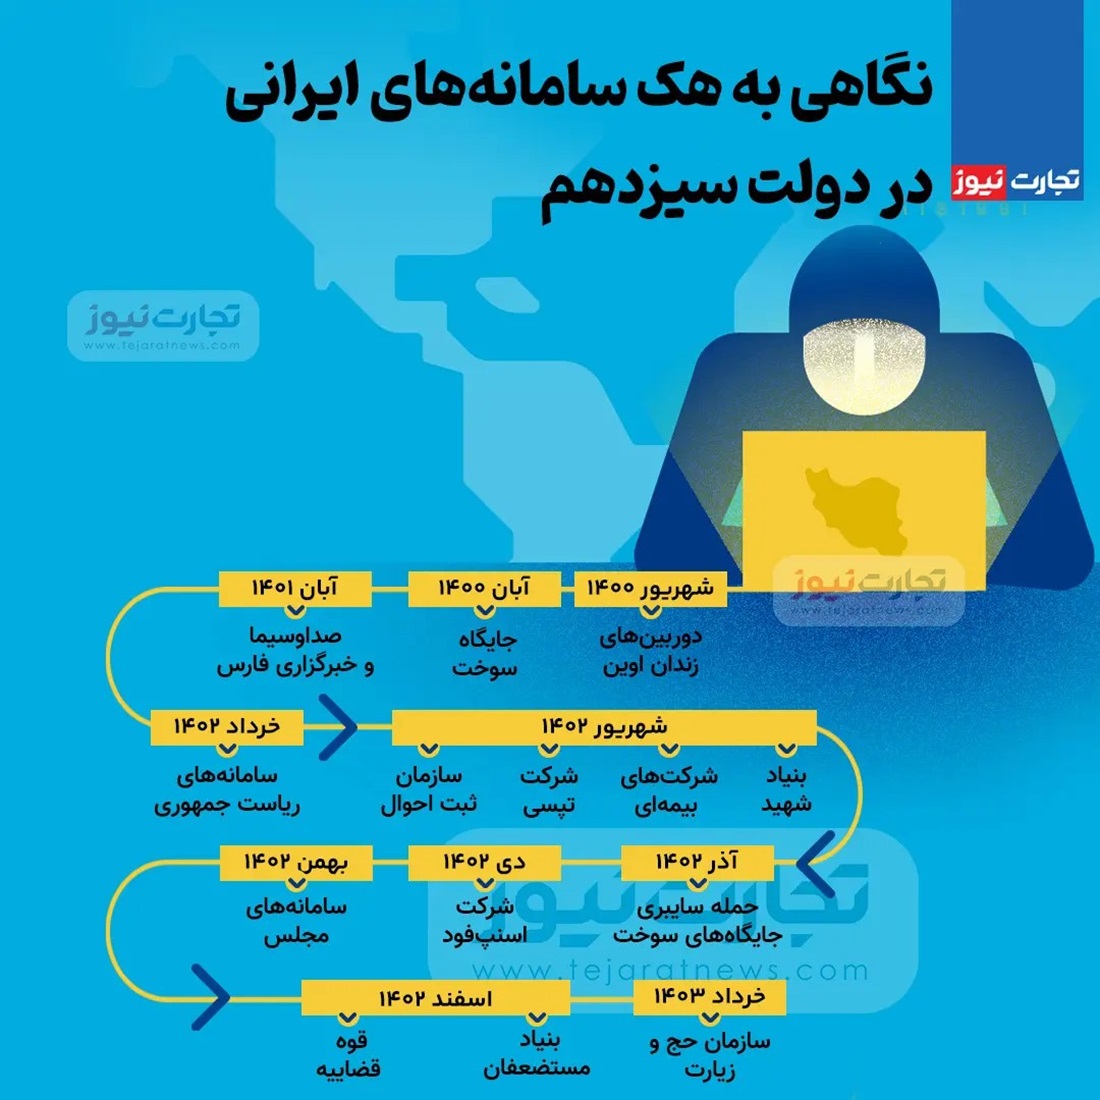 تمامی هک سامانه های ایرانی در دولت سیزدهم